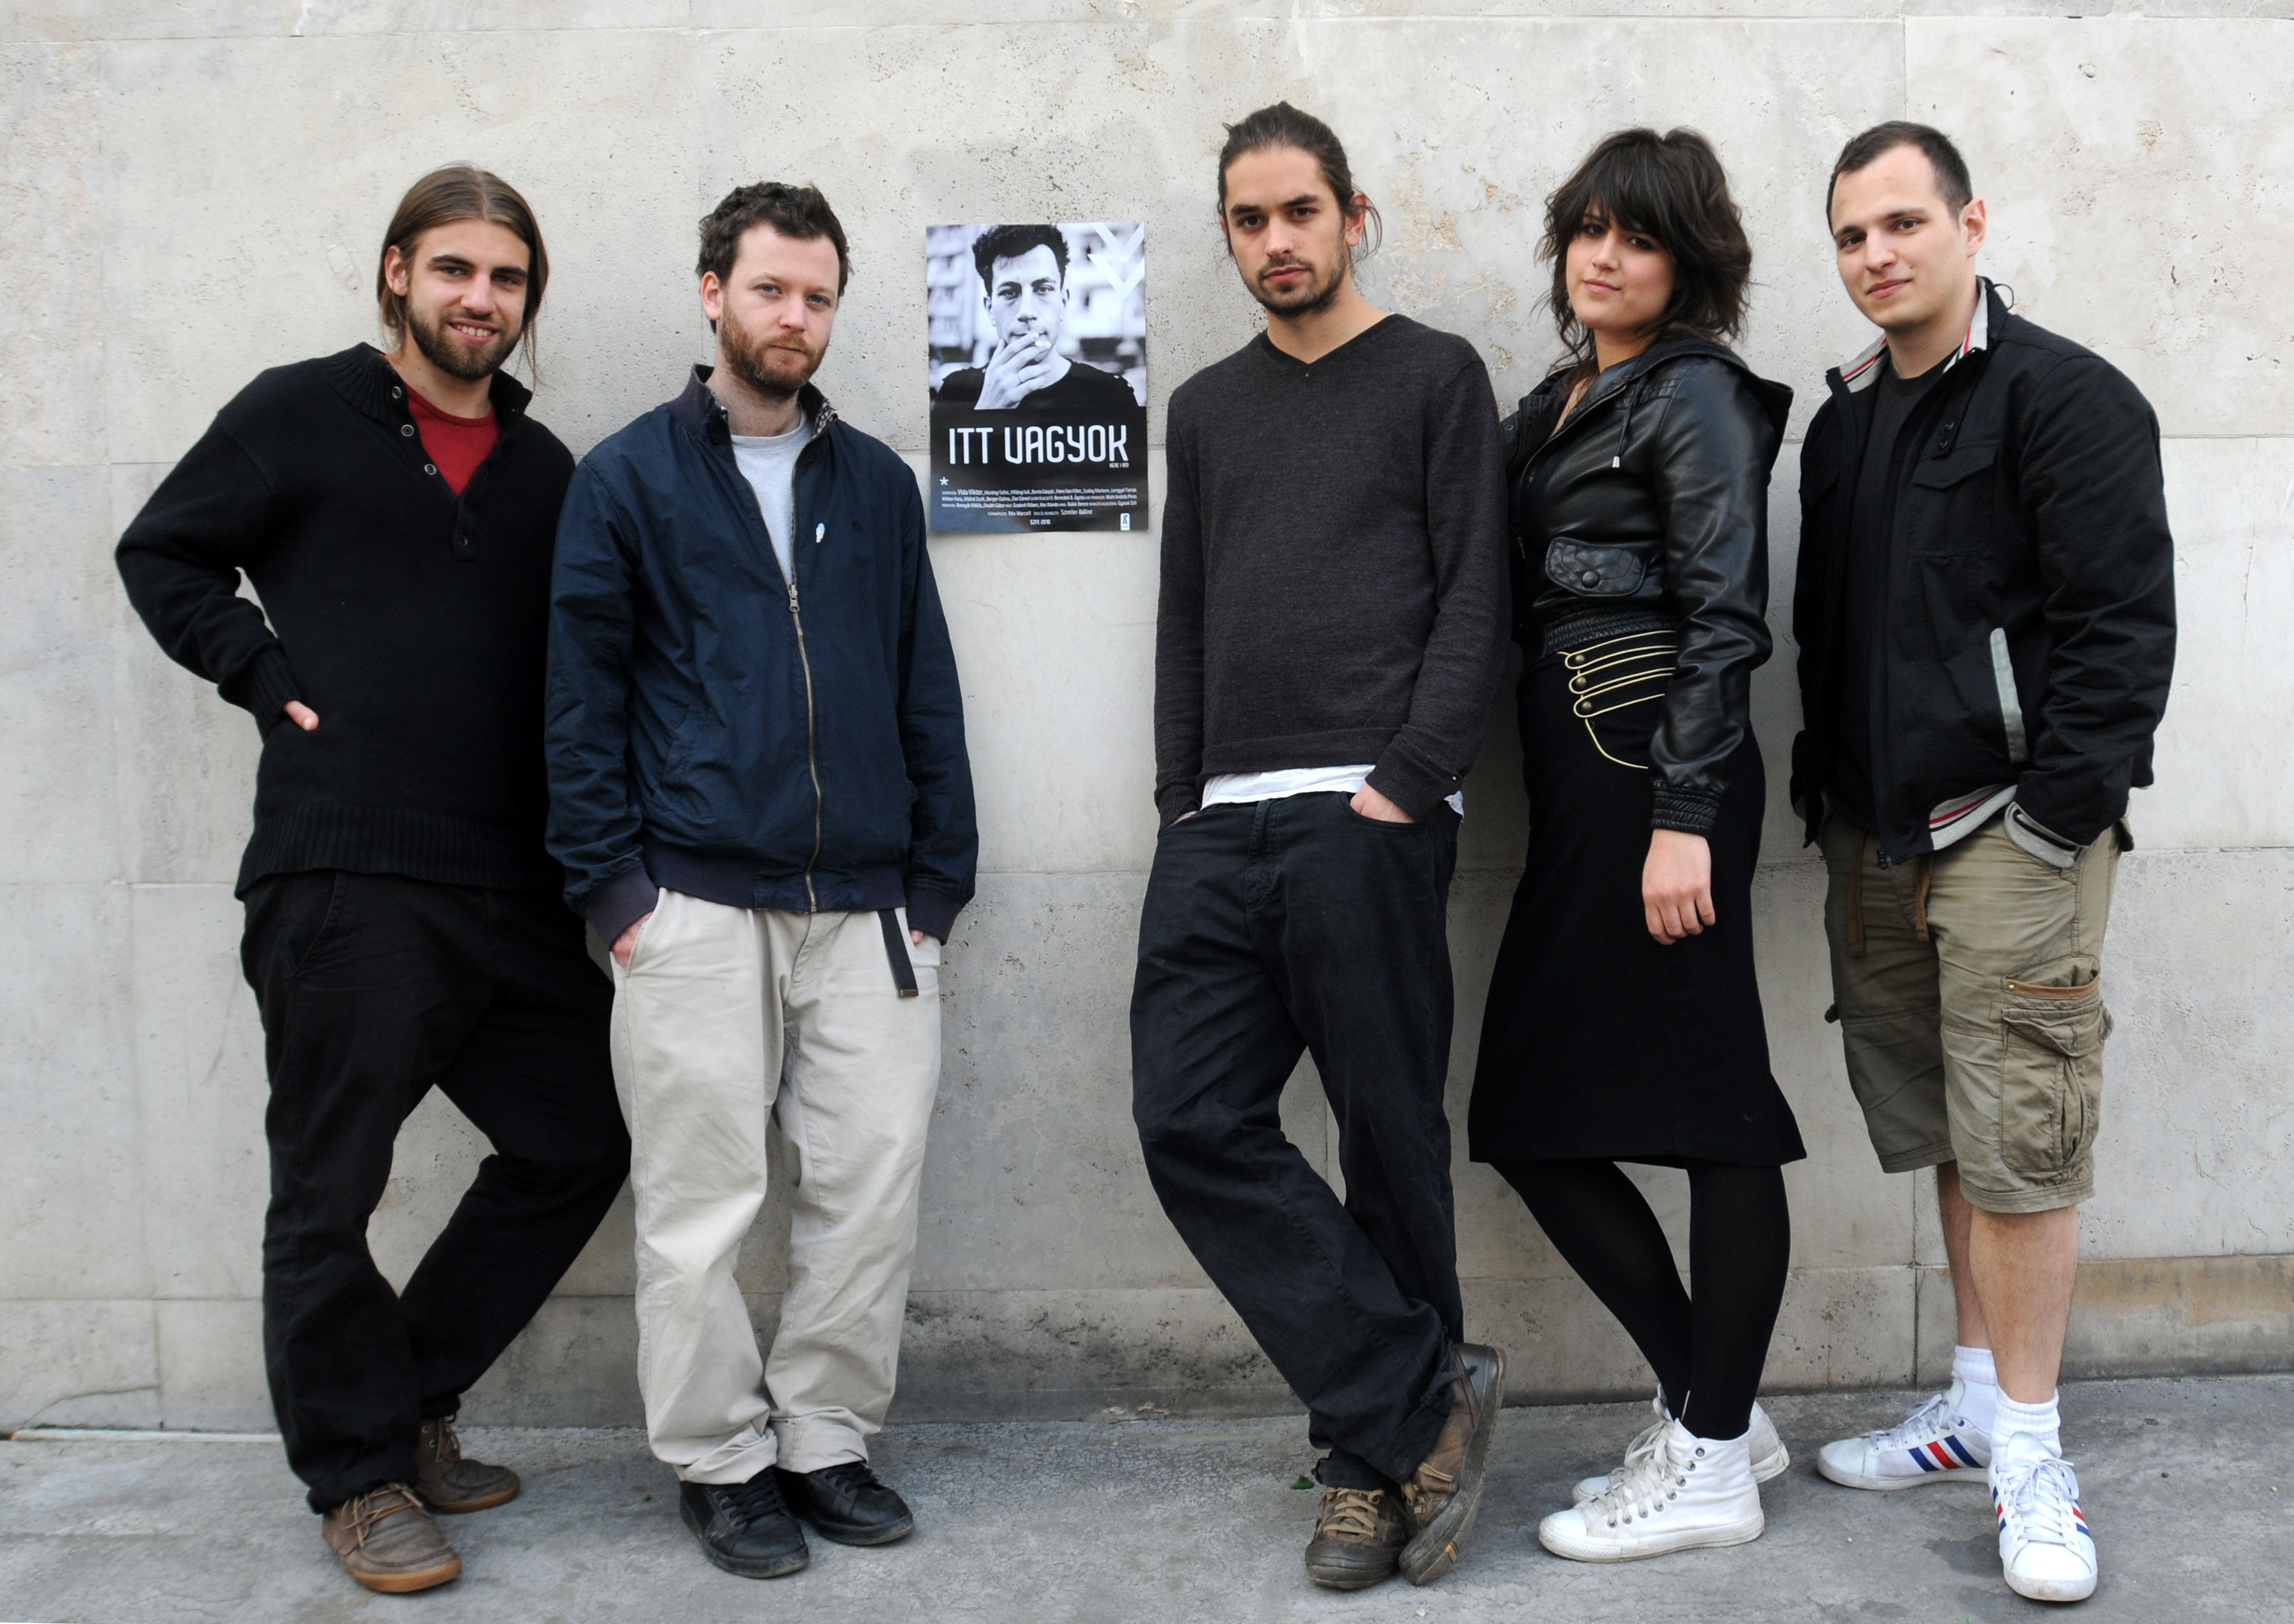 Gábor Osváth, Marcell Rév, Bálint Szimler, András Pires Muhi and Ágota Benedek B. in Itt vagyok (2010)